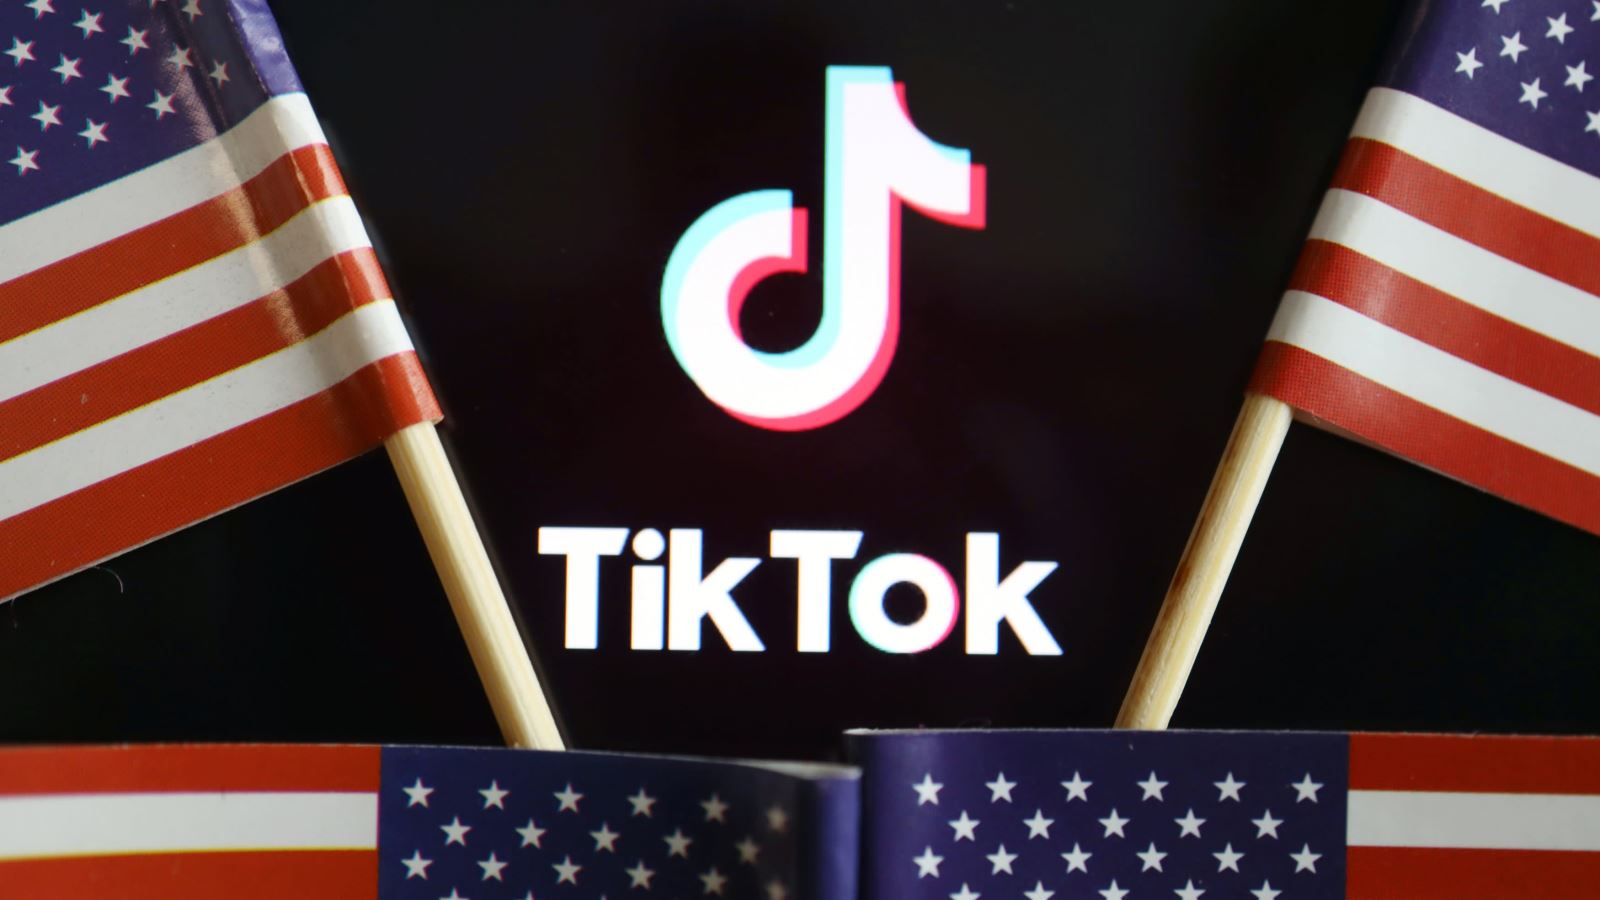 Mua TikTok: TikTok là một ứng dụng gây sốt trên toàn cầu với hàng triệu người dùng. Cùng xem những hình ảnh liên quan để hiểu rõ hơn về sức hút của TikTok và lý do tại sao nó nên được mua.